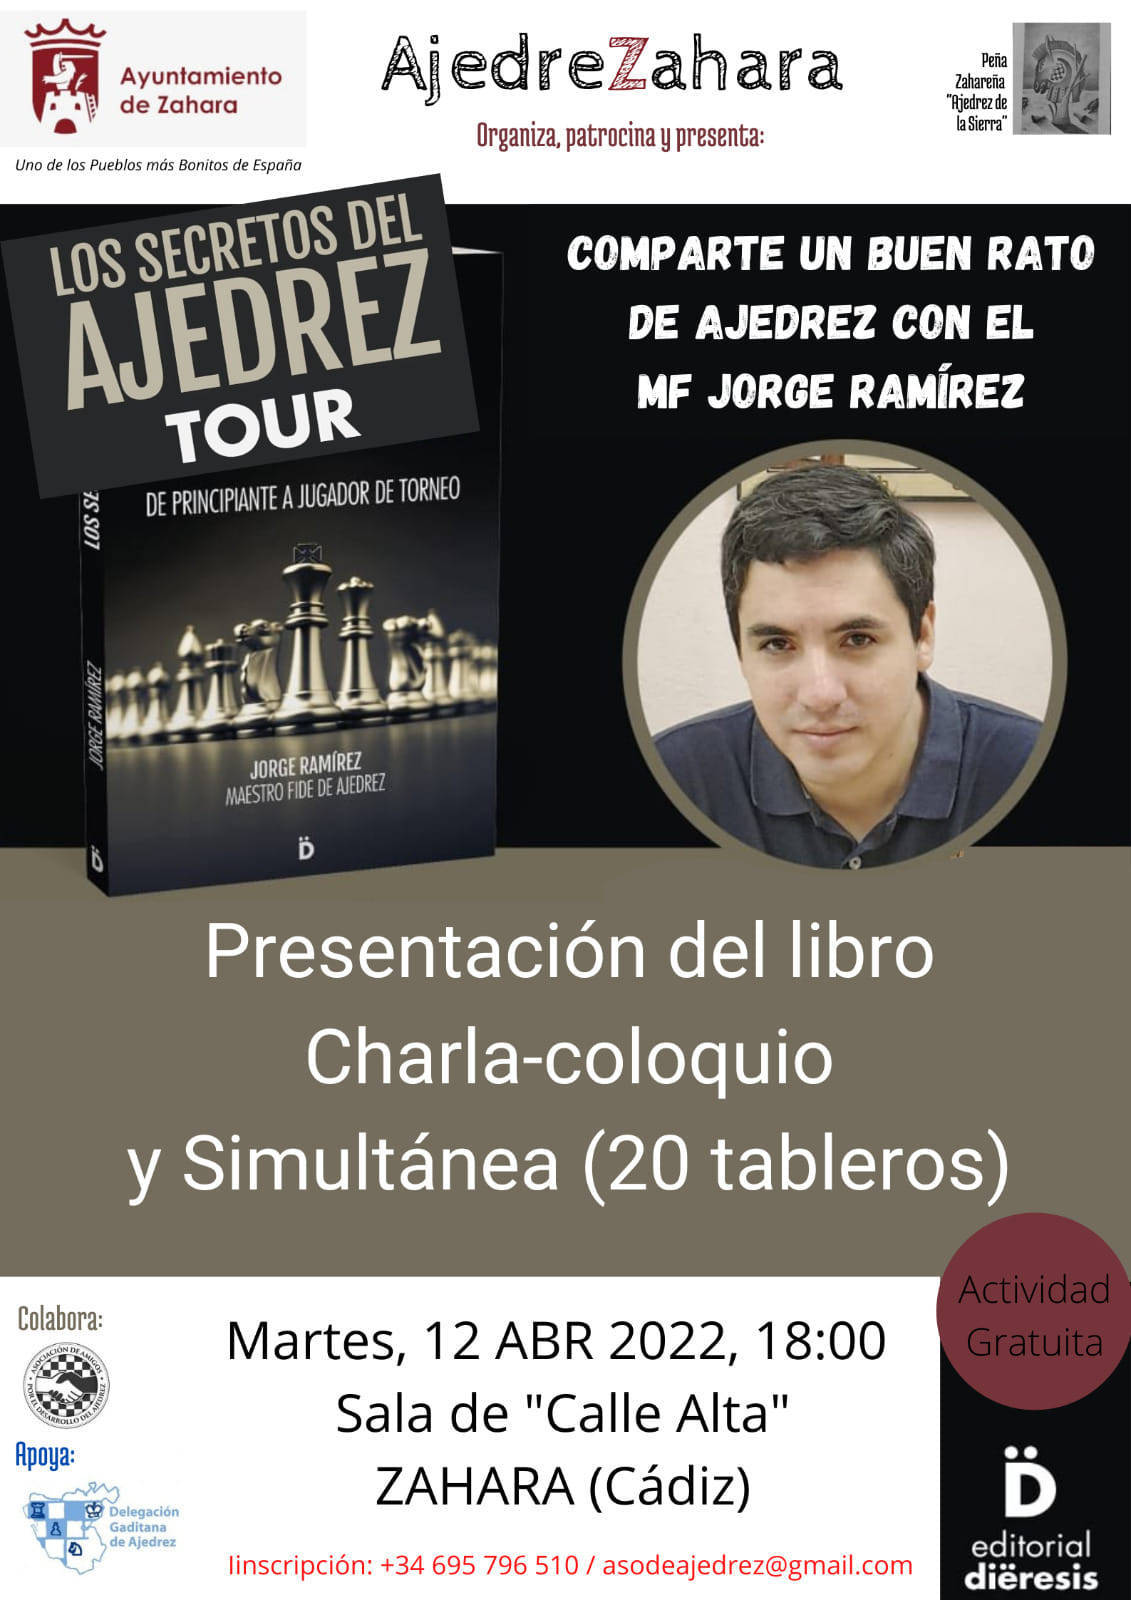 Presentación del libro 'Los secretos del ajedrez' (2022) - Zahara de la Sierra (Cádiz)